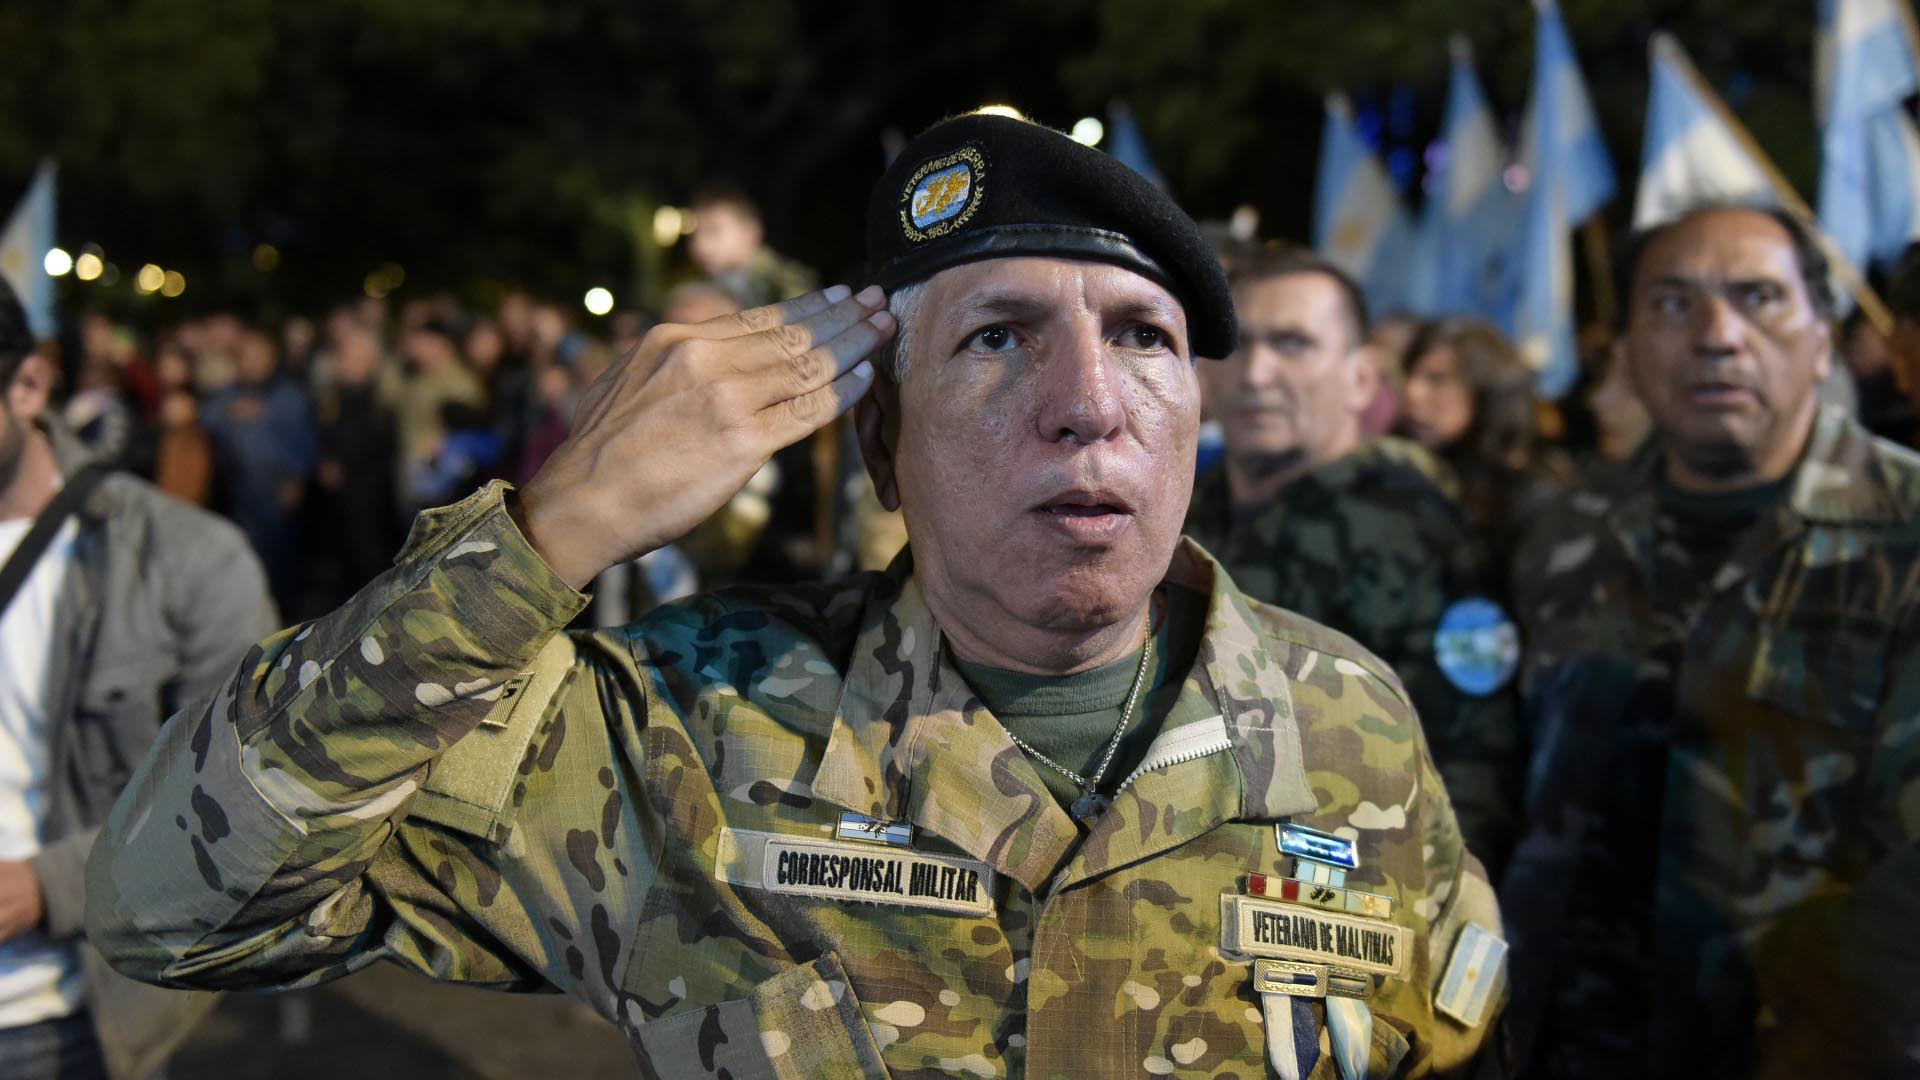 Grupos de excombatientes formaron parte de los actos para conmemorar el Día de los Caídos y Veteranos en la guerra por la soberanía argentina en las islas